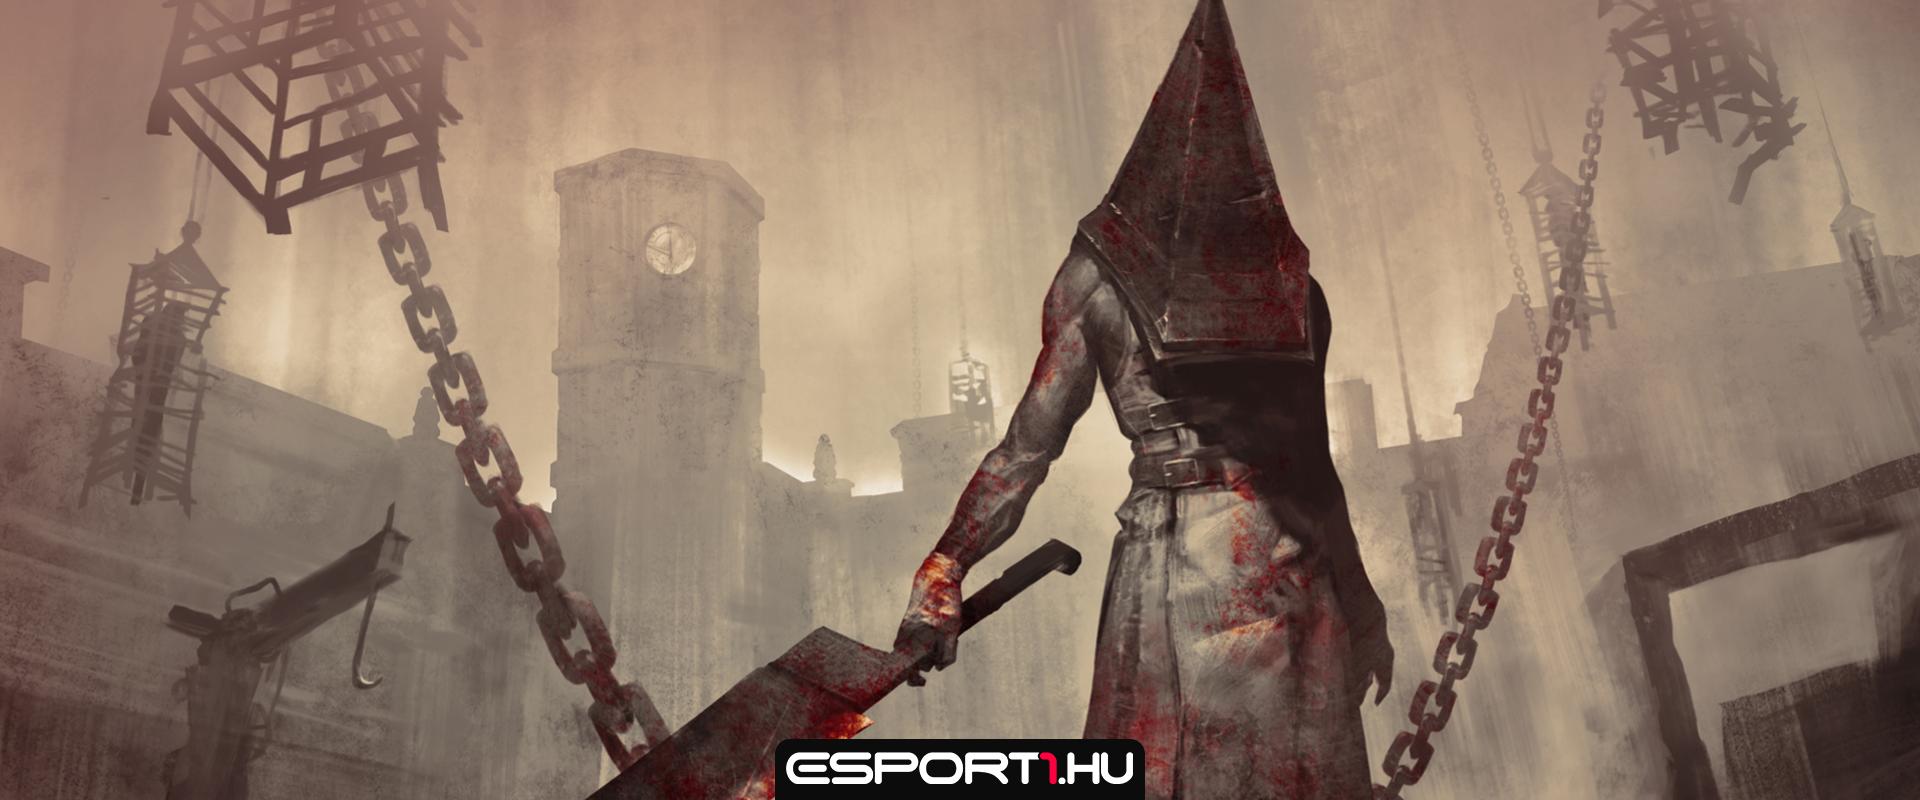 Megvették a Silent Hill weboldalát – de nem a játék fejlesztői voltak azok